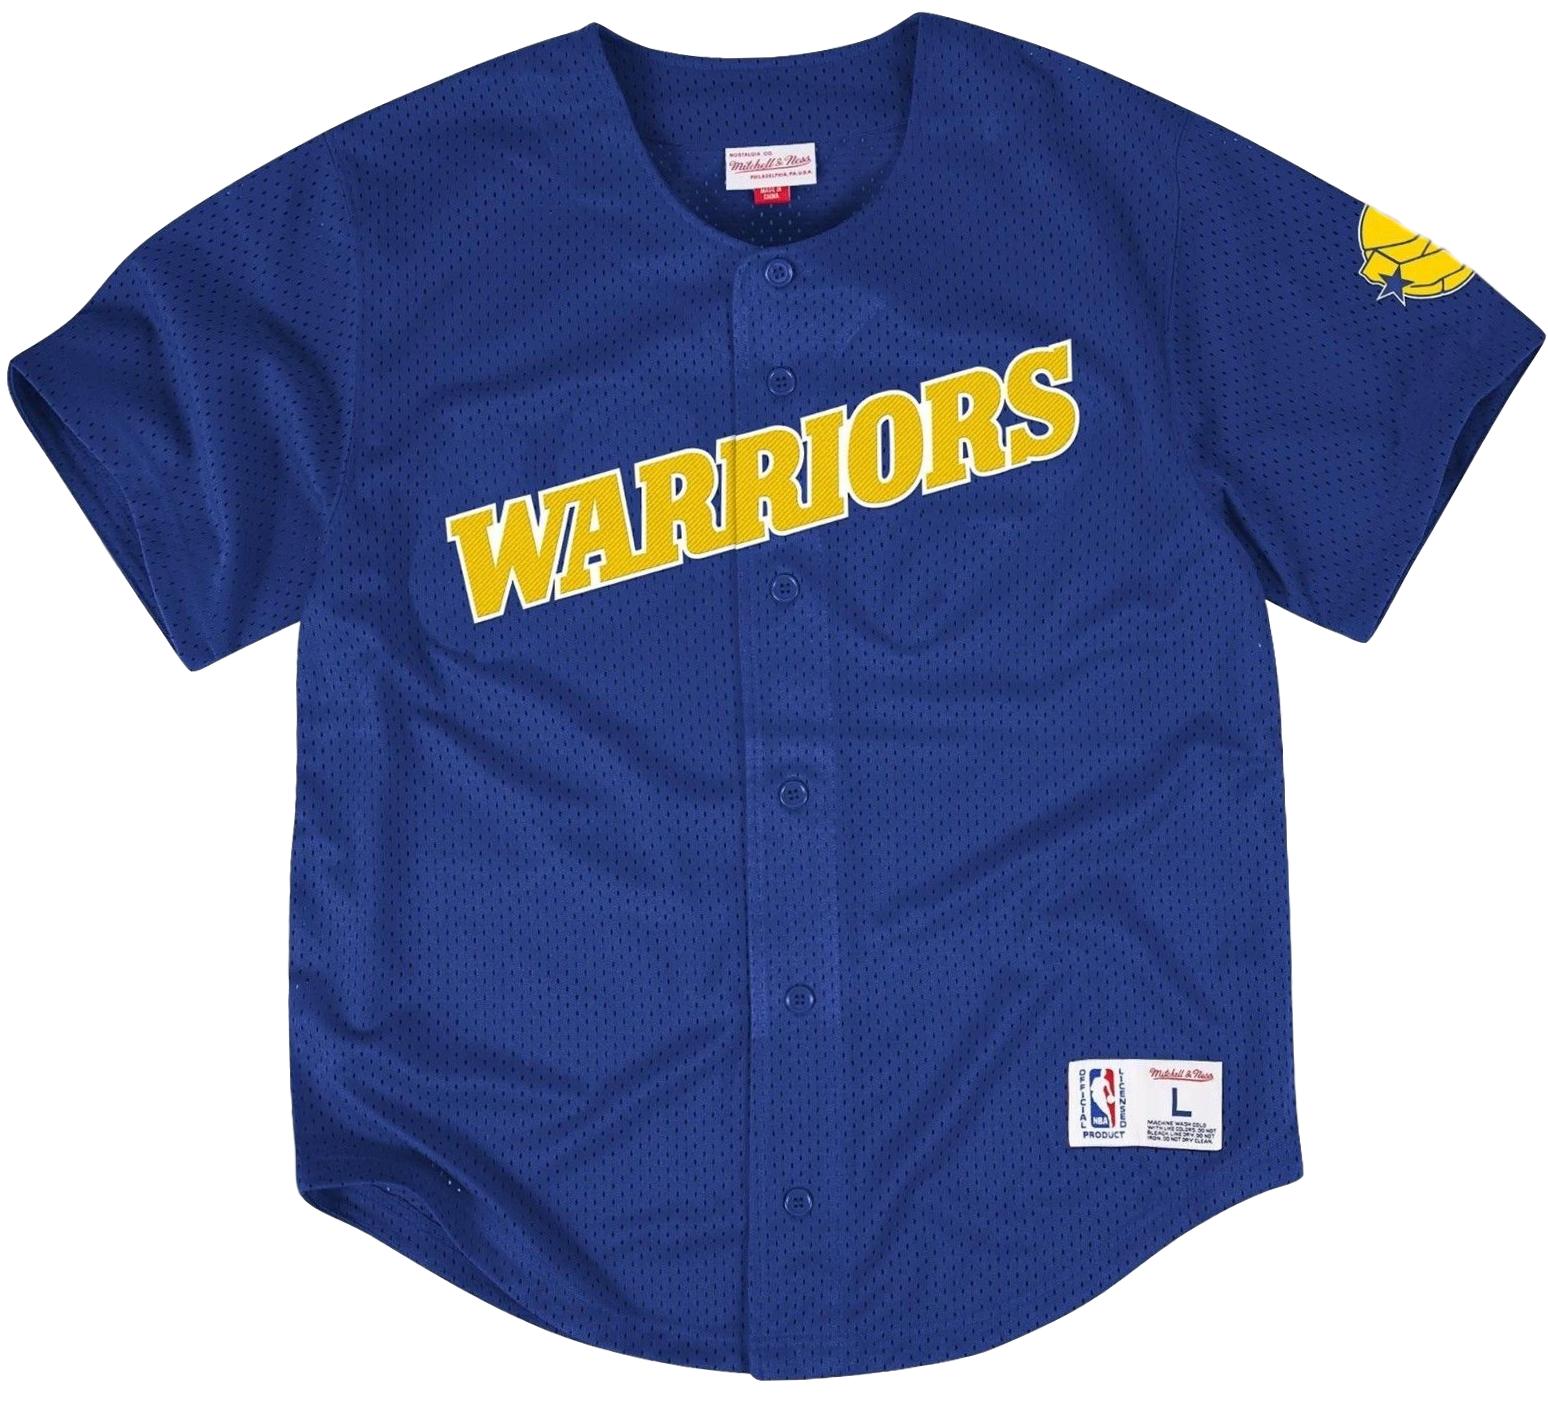 warriors baseball jersey Cheaper Than 